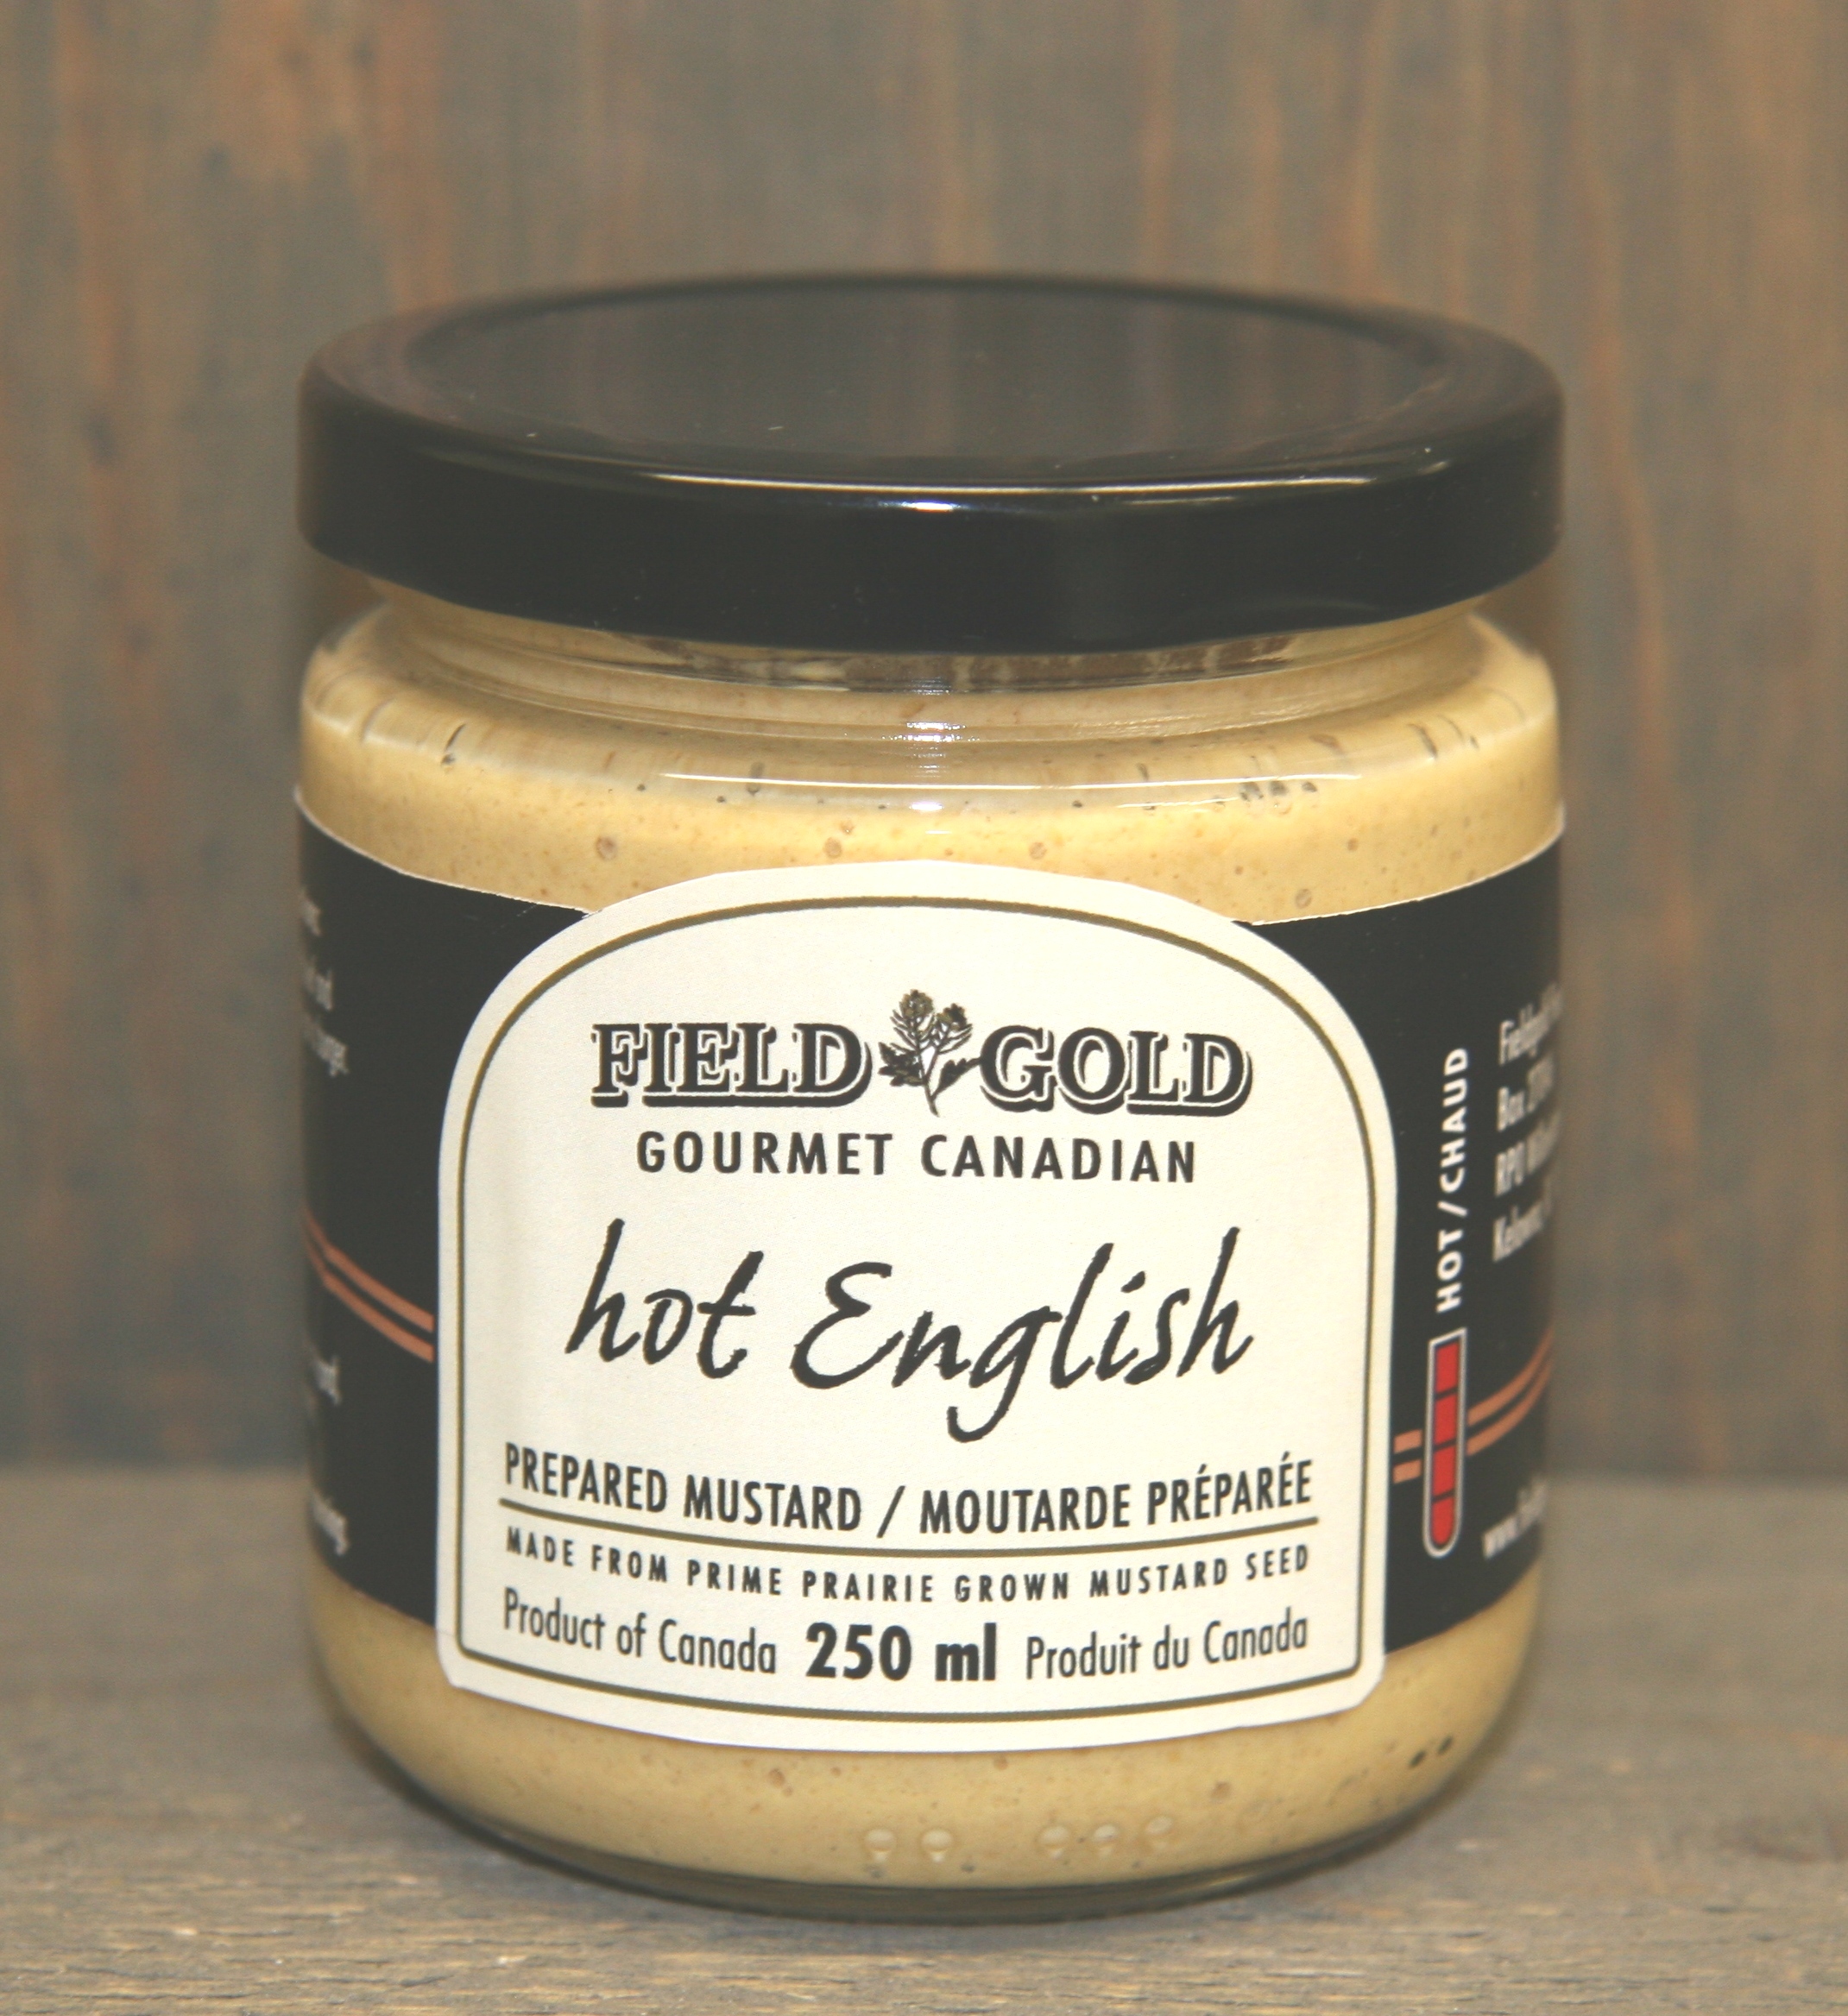 Hot English Mustard